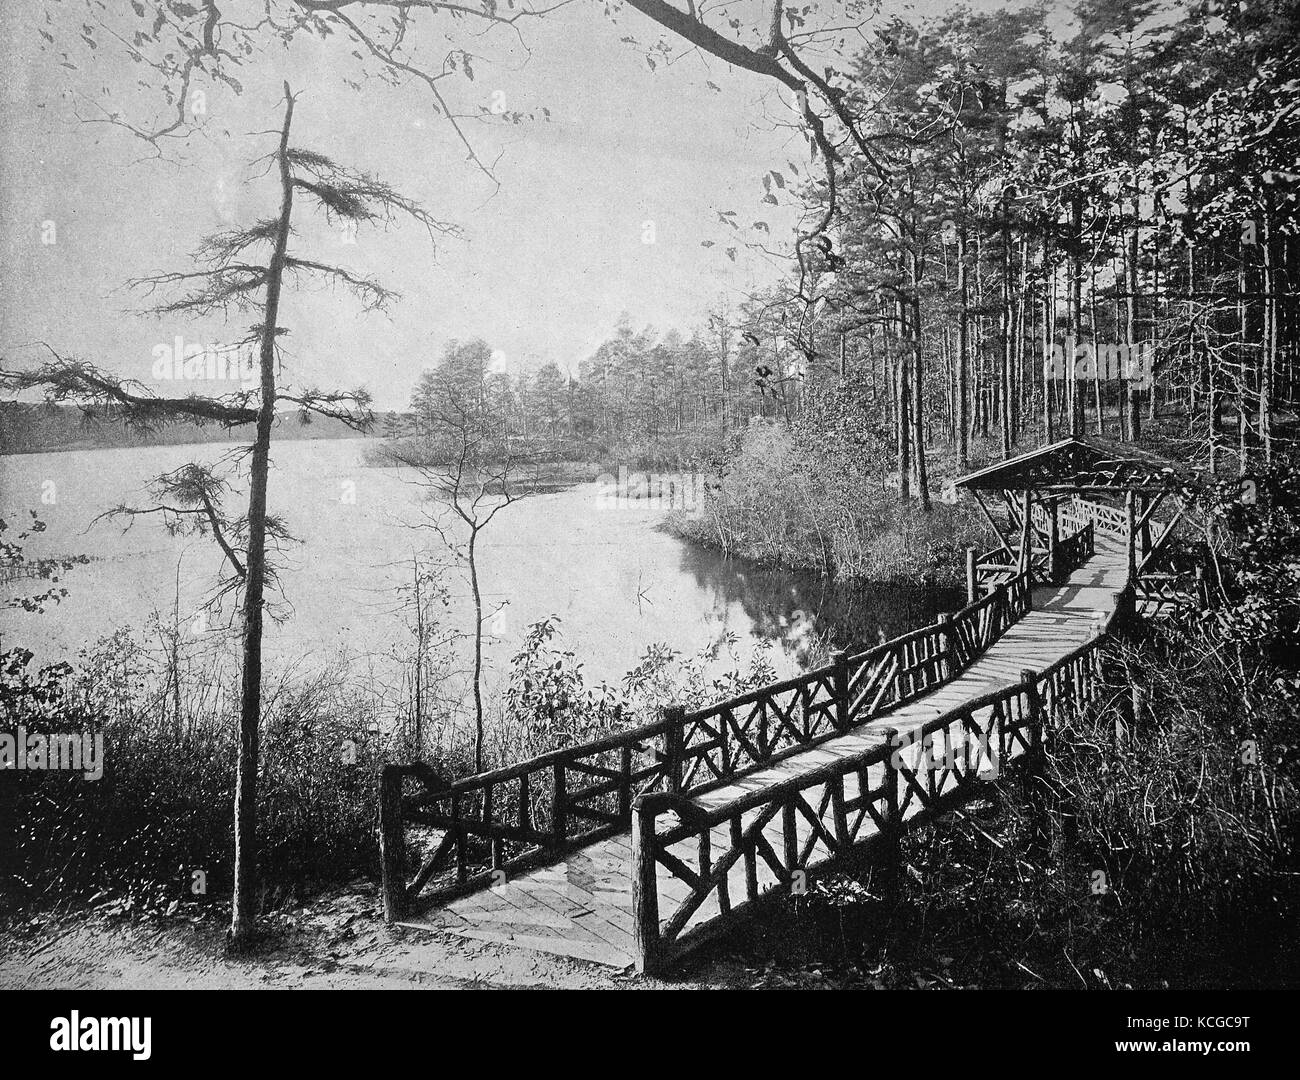 États-unis d'Amérique, un pont en bois sur le lac Érié à Lakewood, Ohio State, le pont a été appelée Kiss Bridge numérique, l'amélioration de la reproduction d'une photo historique de l'année 1899 (estimé) Banque D'Images